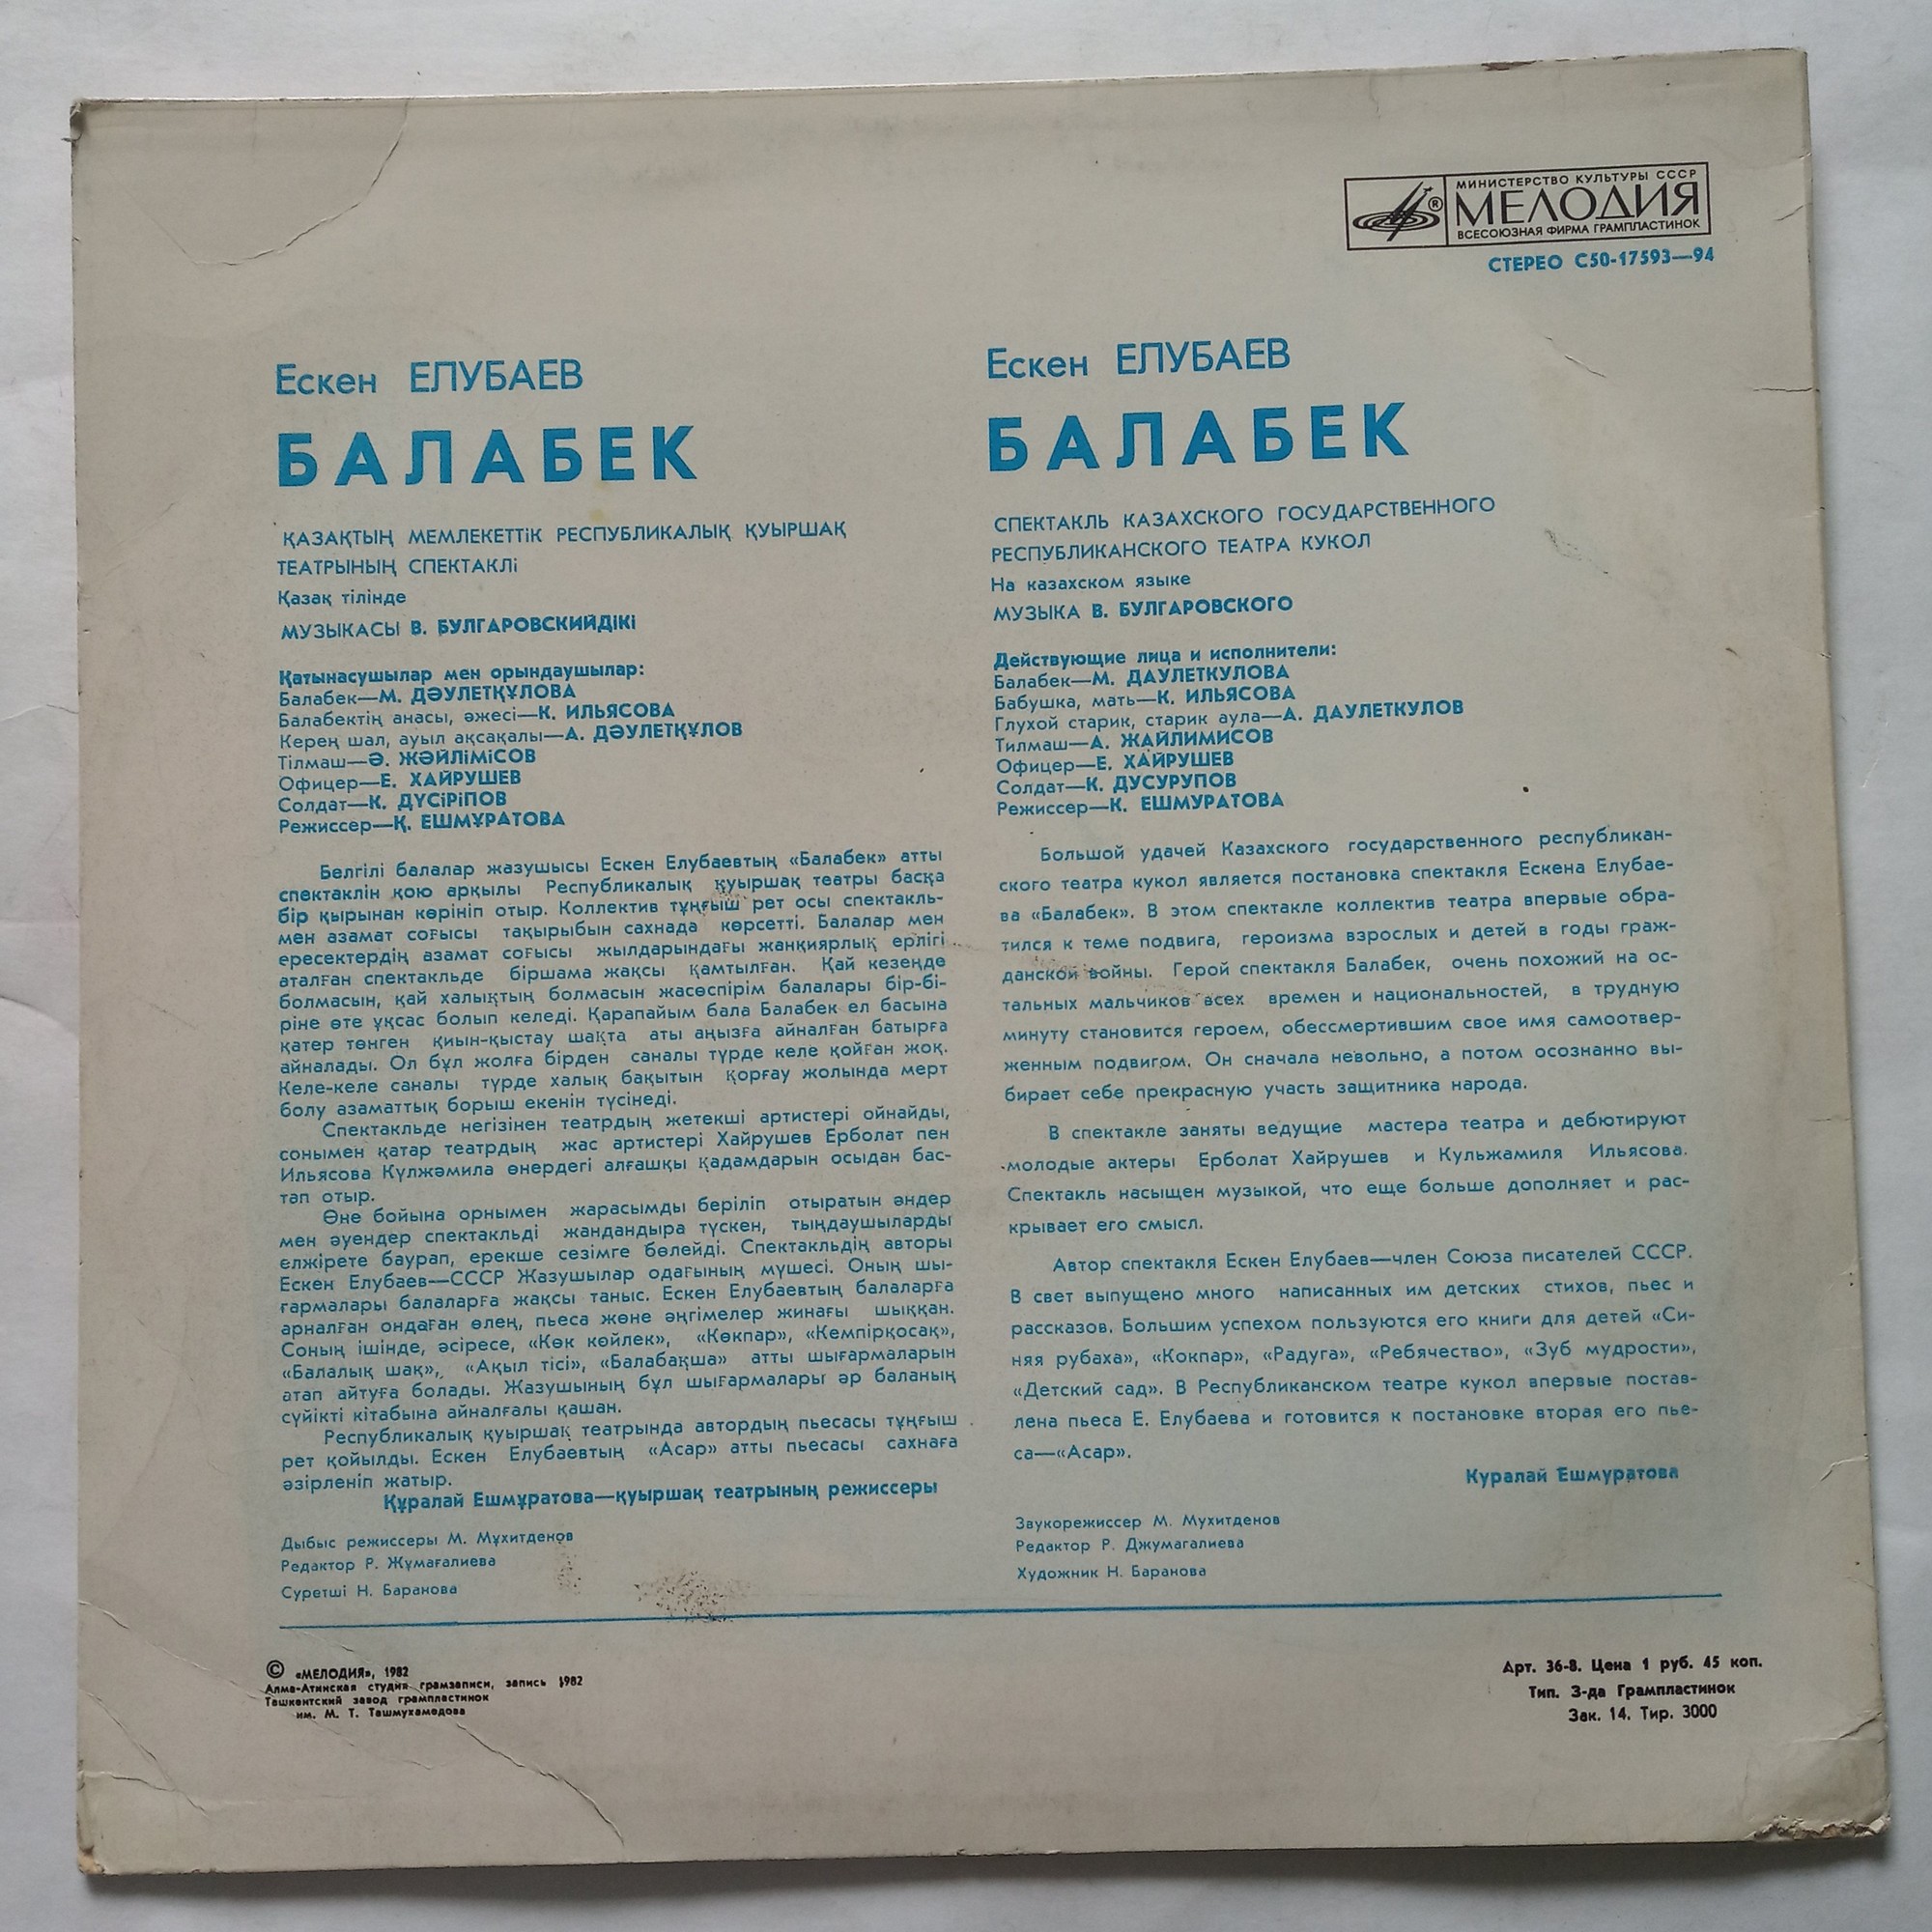 Е. ЕЛУБАЕВ (1942): Балабек (спектакль Казахского гос. республиканского театра кукол, музыка В. Булгаровского).